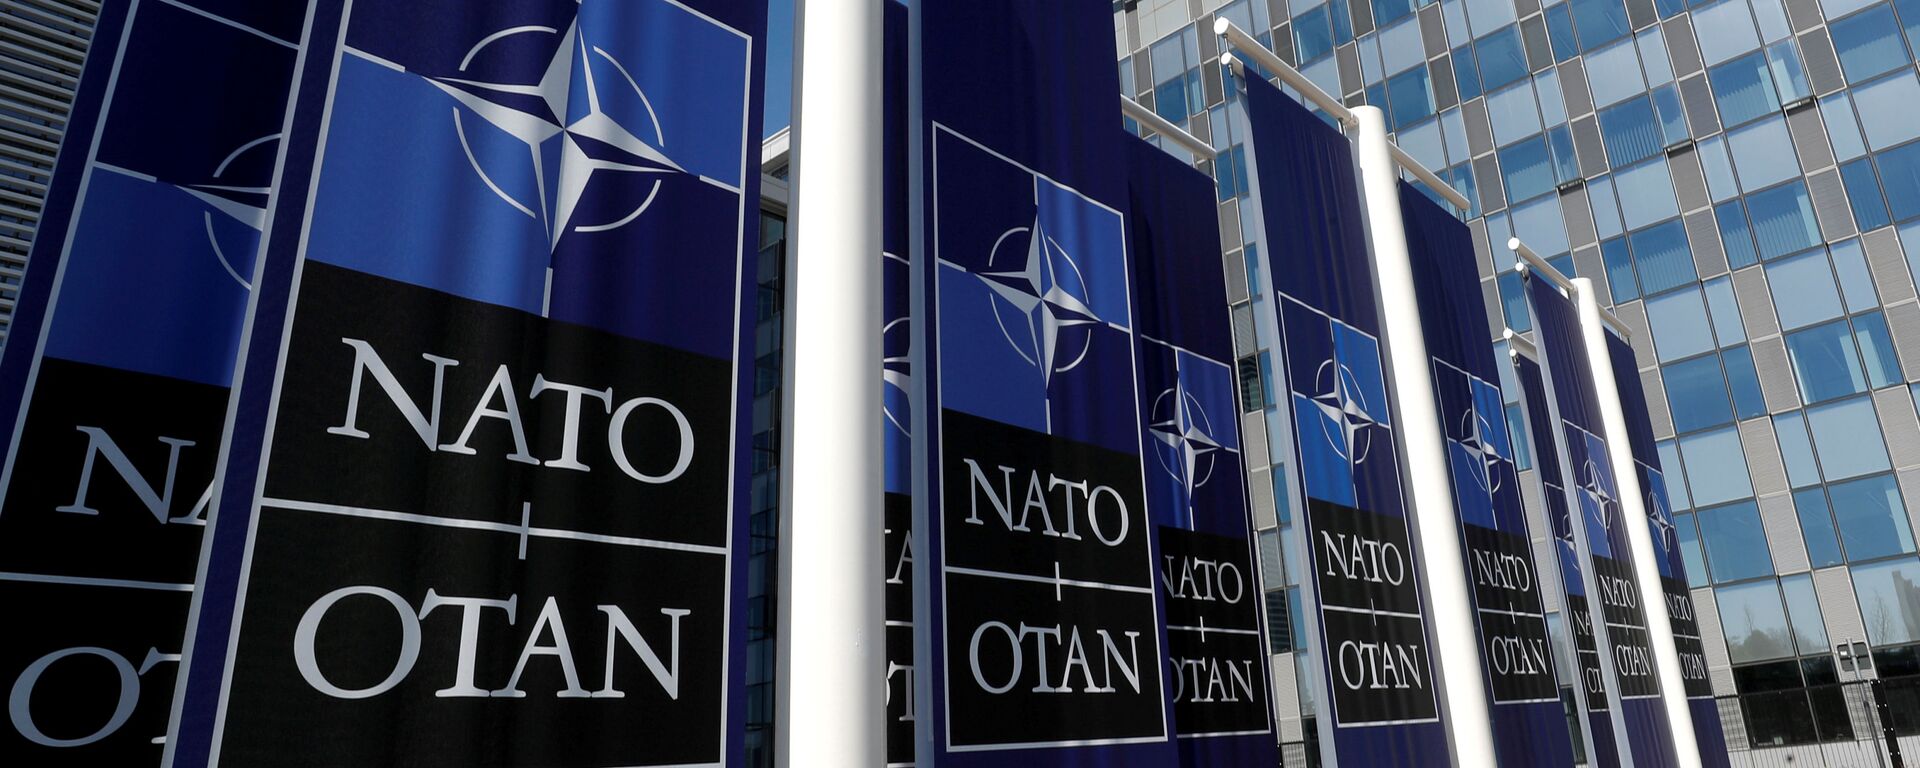 Баннеры с логотипом НАТО у входа в новую штаб-квартиру НАТО - Sputnik Беларусь, 1920, 29.11.2021